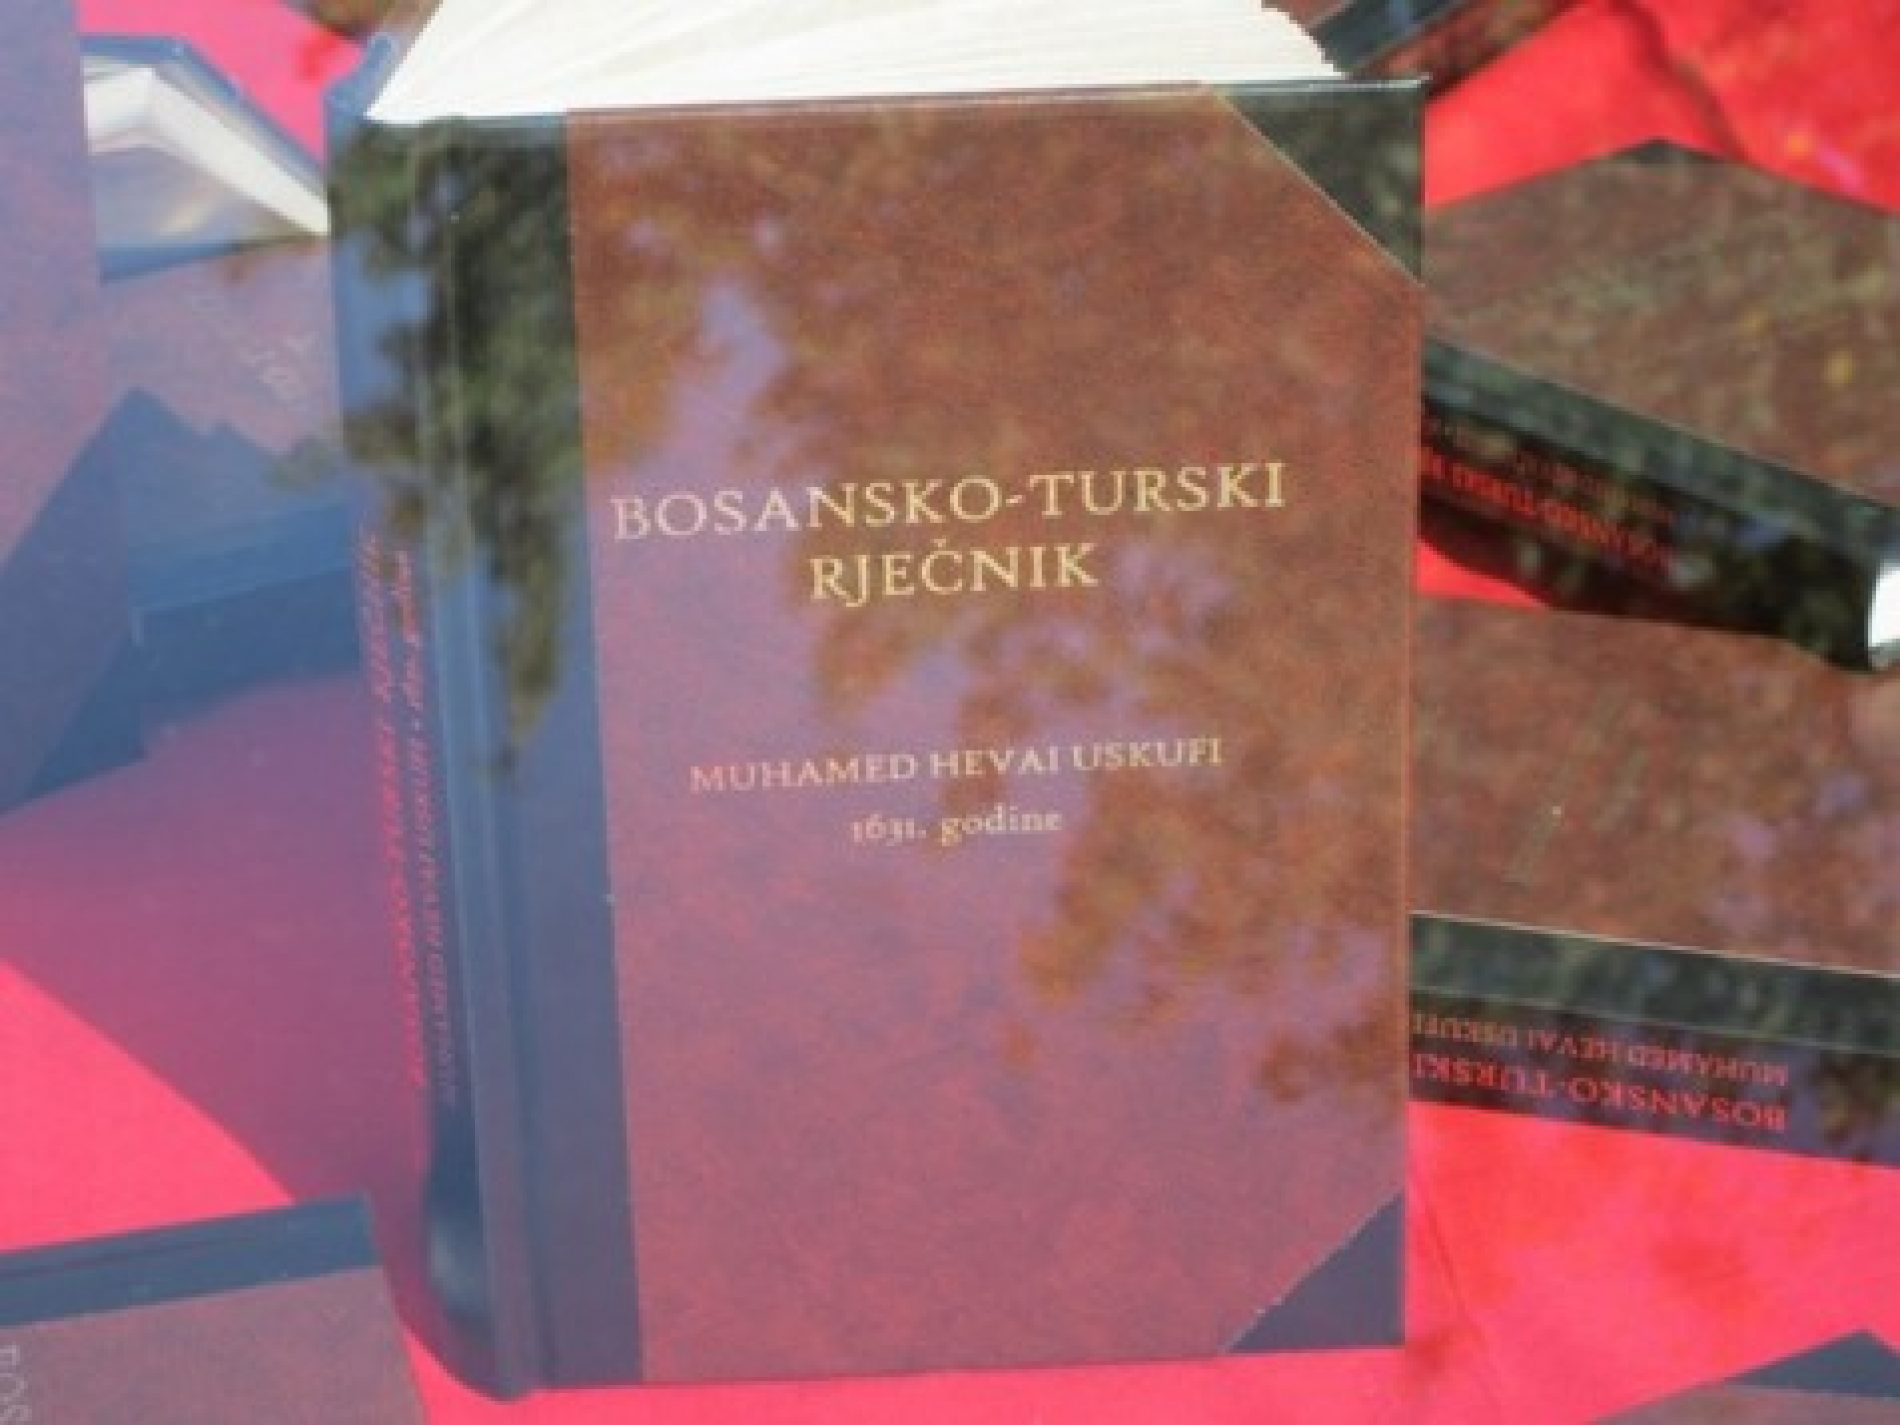 Prvi bosanski rječnik: Gradu Tuzla 2.000 bosansko-turskih rječnika